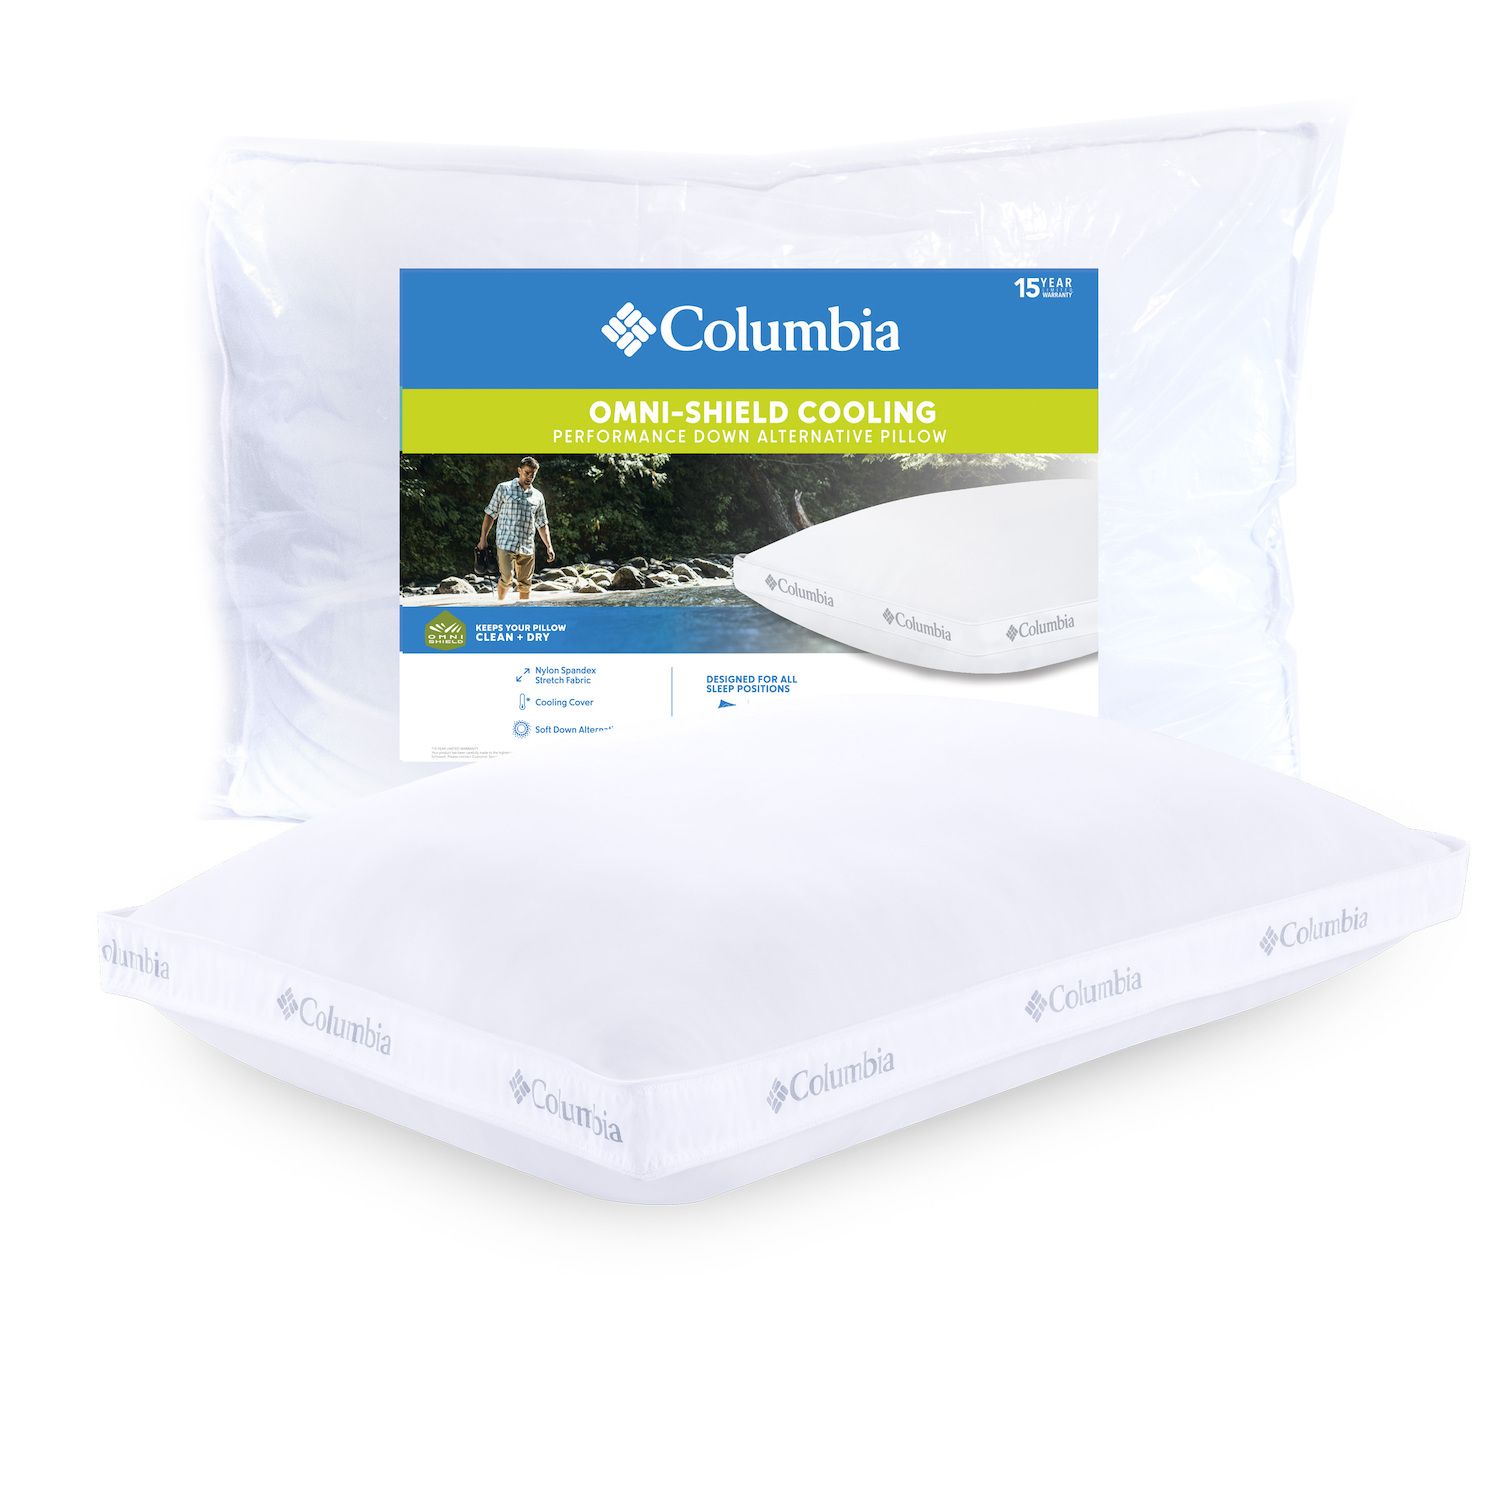 columbia ice fiber pillow king